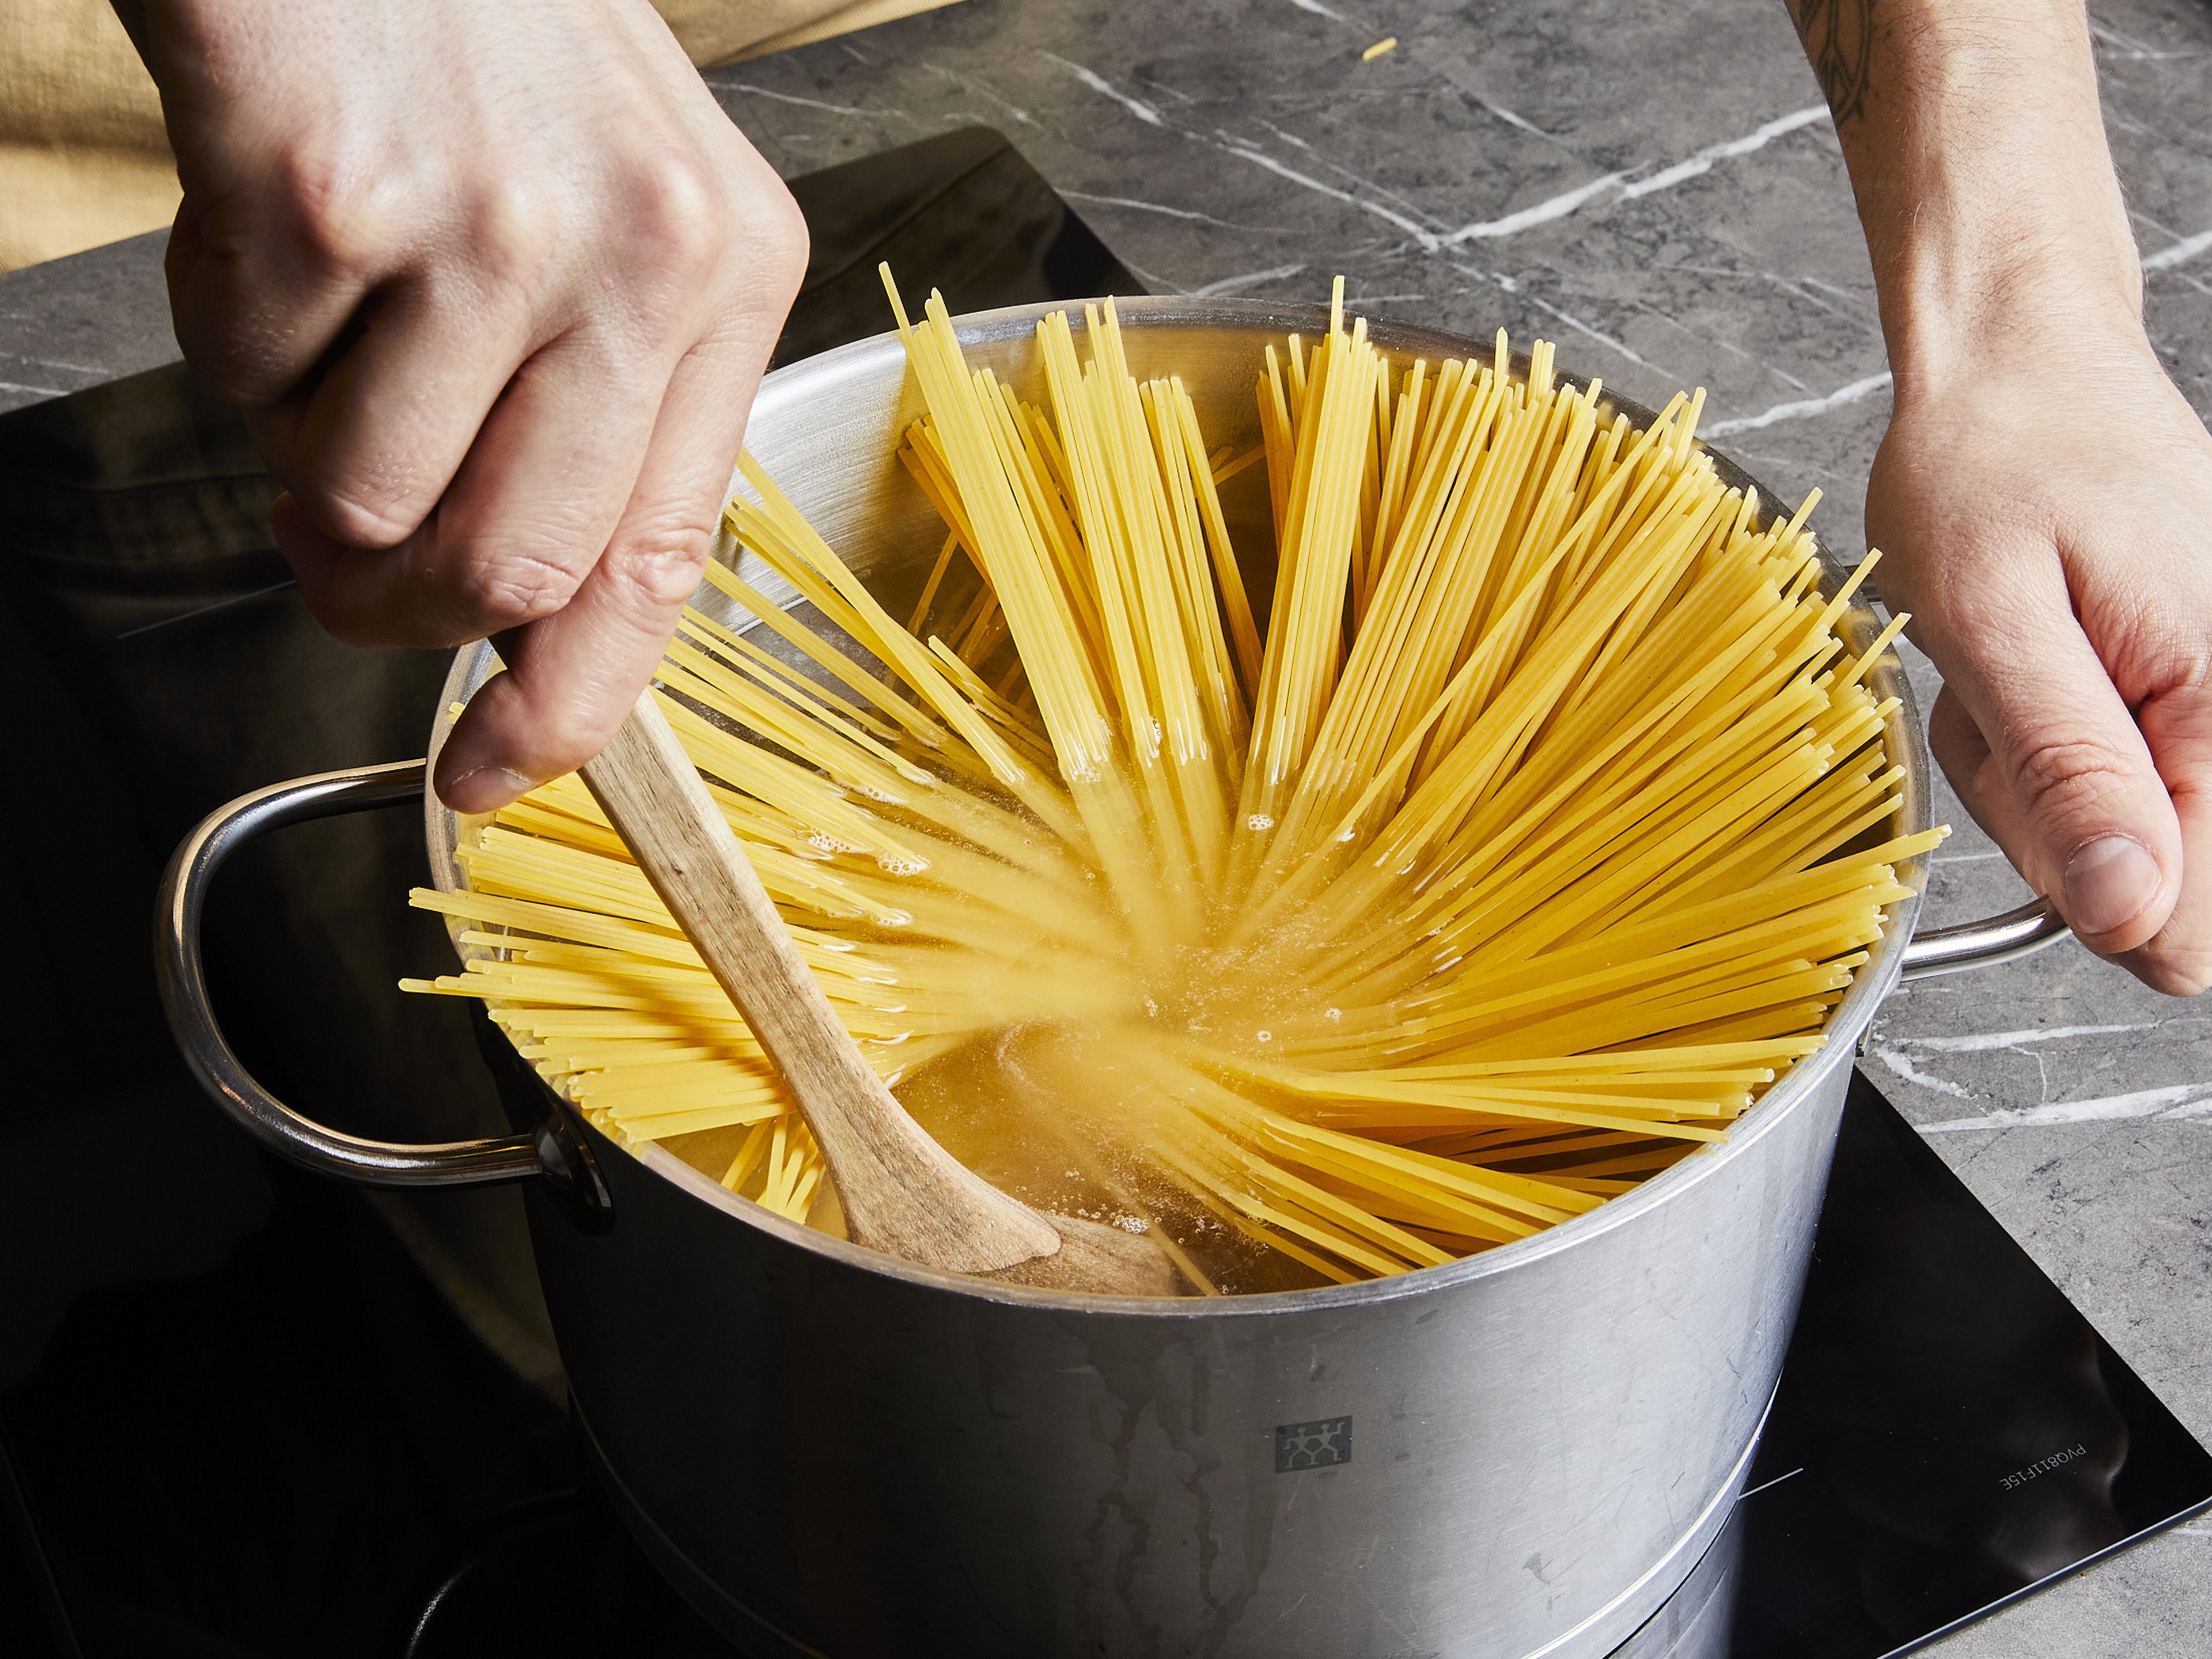 In der Zwischenzeit die Spaghetti in reichlich kochendem Salzwasser nach Packungsanweisung bissfest kochen. Die Nudeln abgießen und mit der Bolognese-Soße und geriebenem Parmesan servieren.